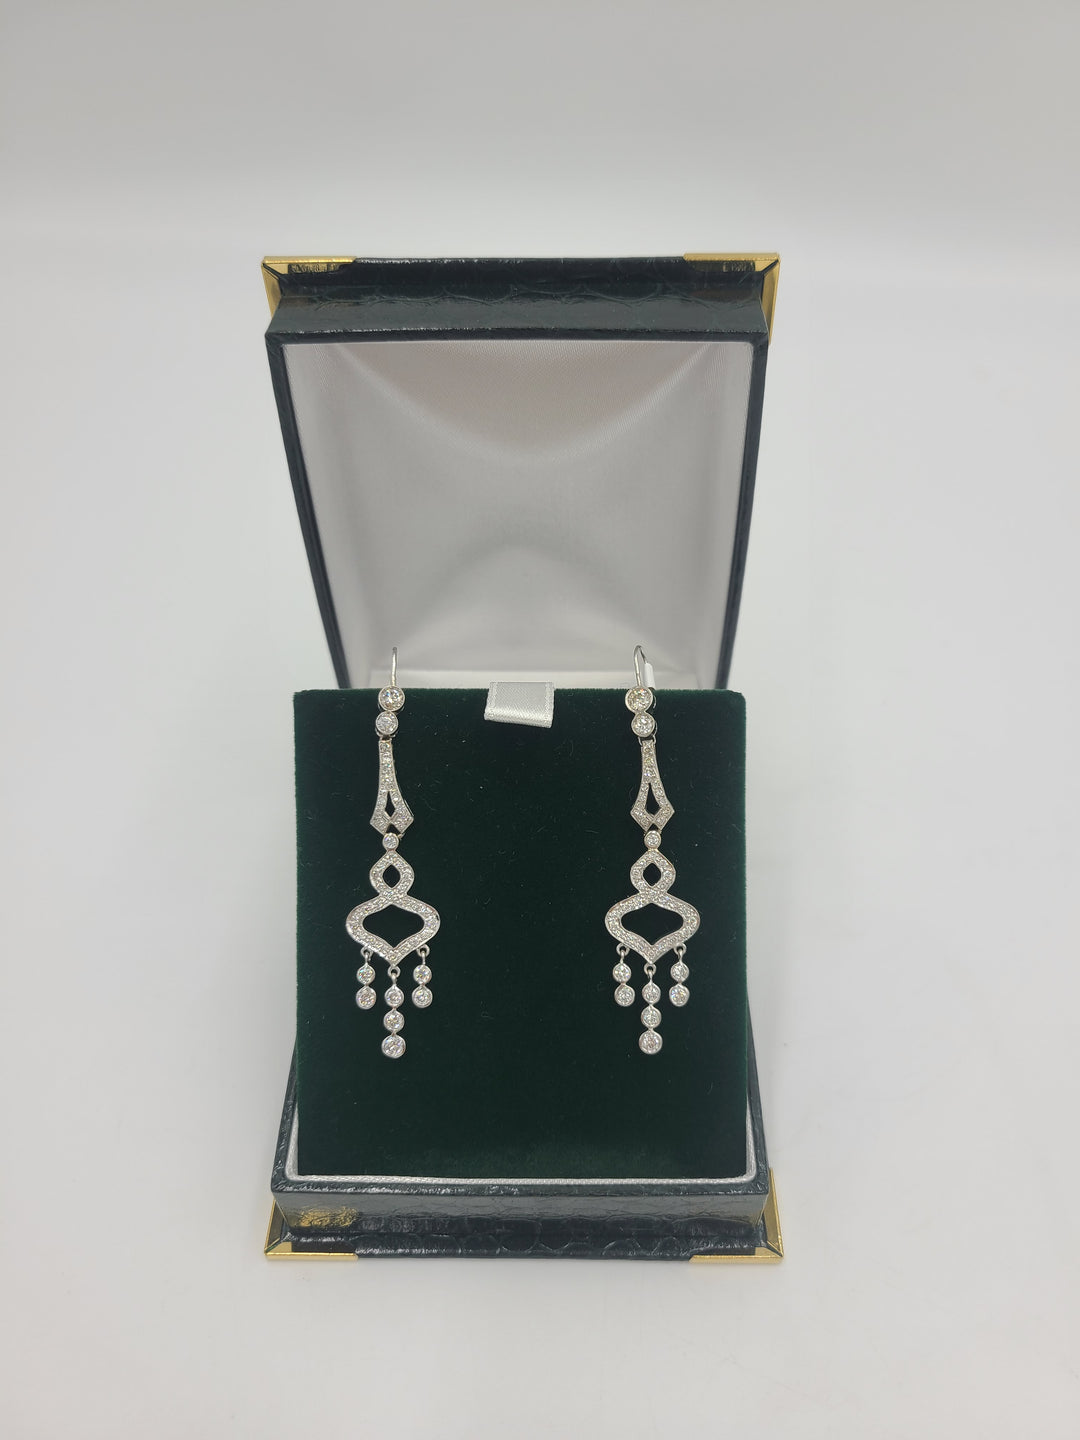 k793 Stunning 14kt White Gold Diamond Chandelier Earrings